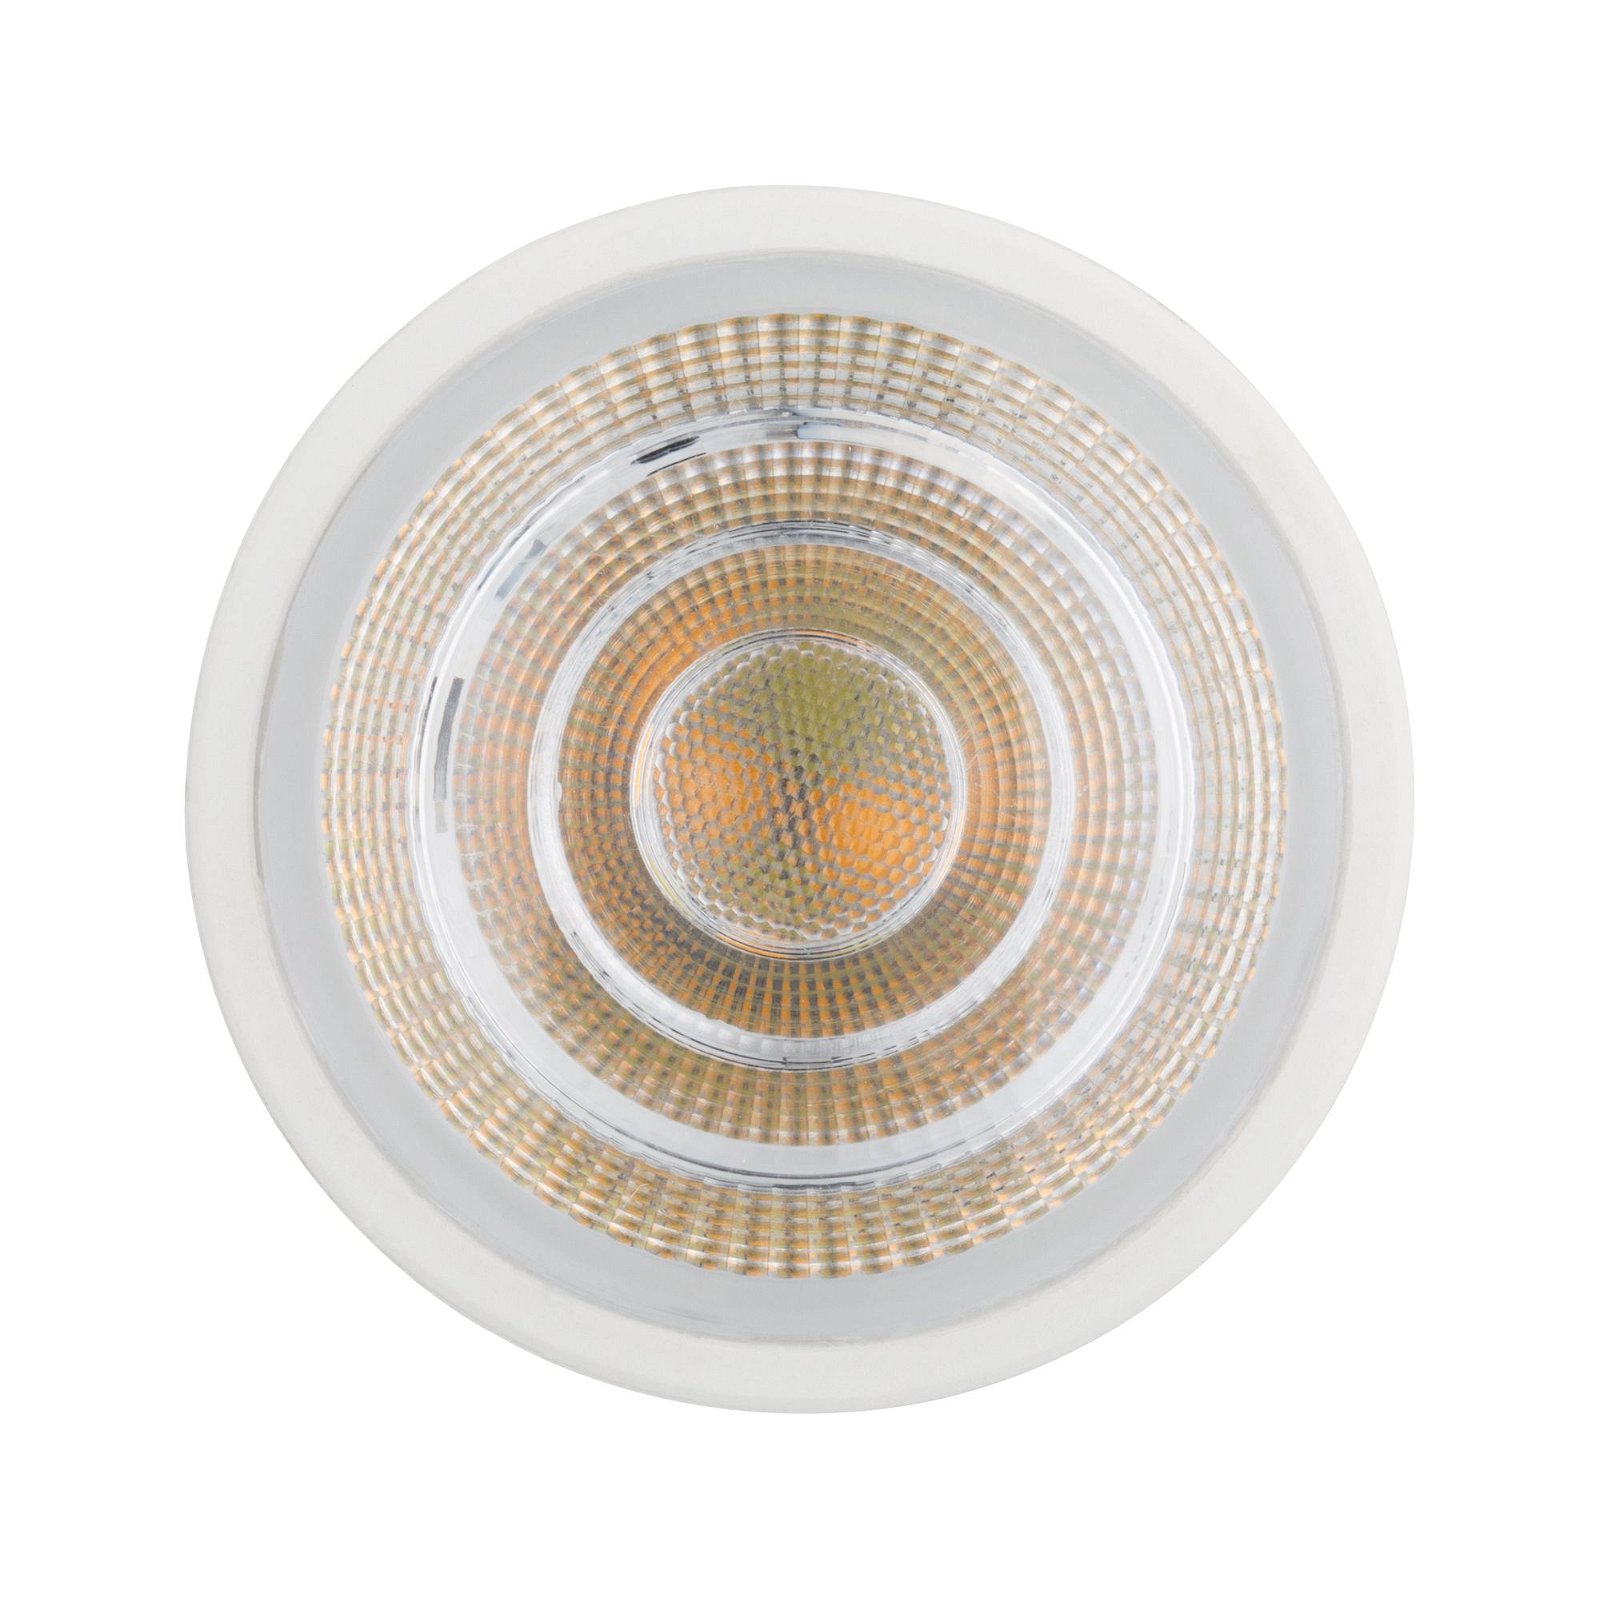 Smart Home Zigbee Standard 230V LED Reflektor GU10 330lm 4,9W Tunable White dimmbar Matt